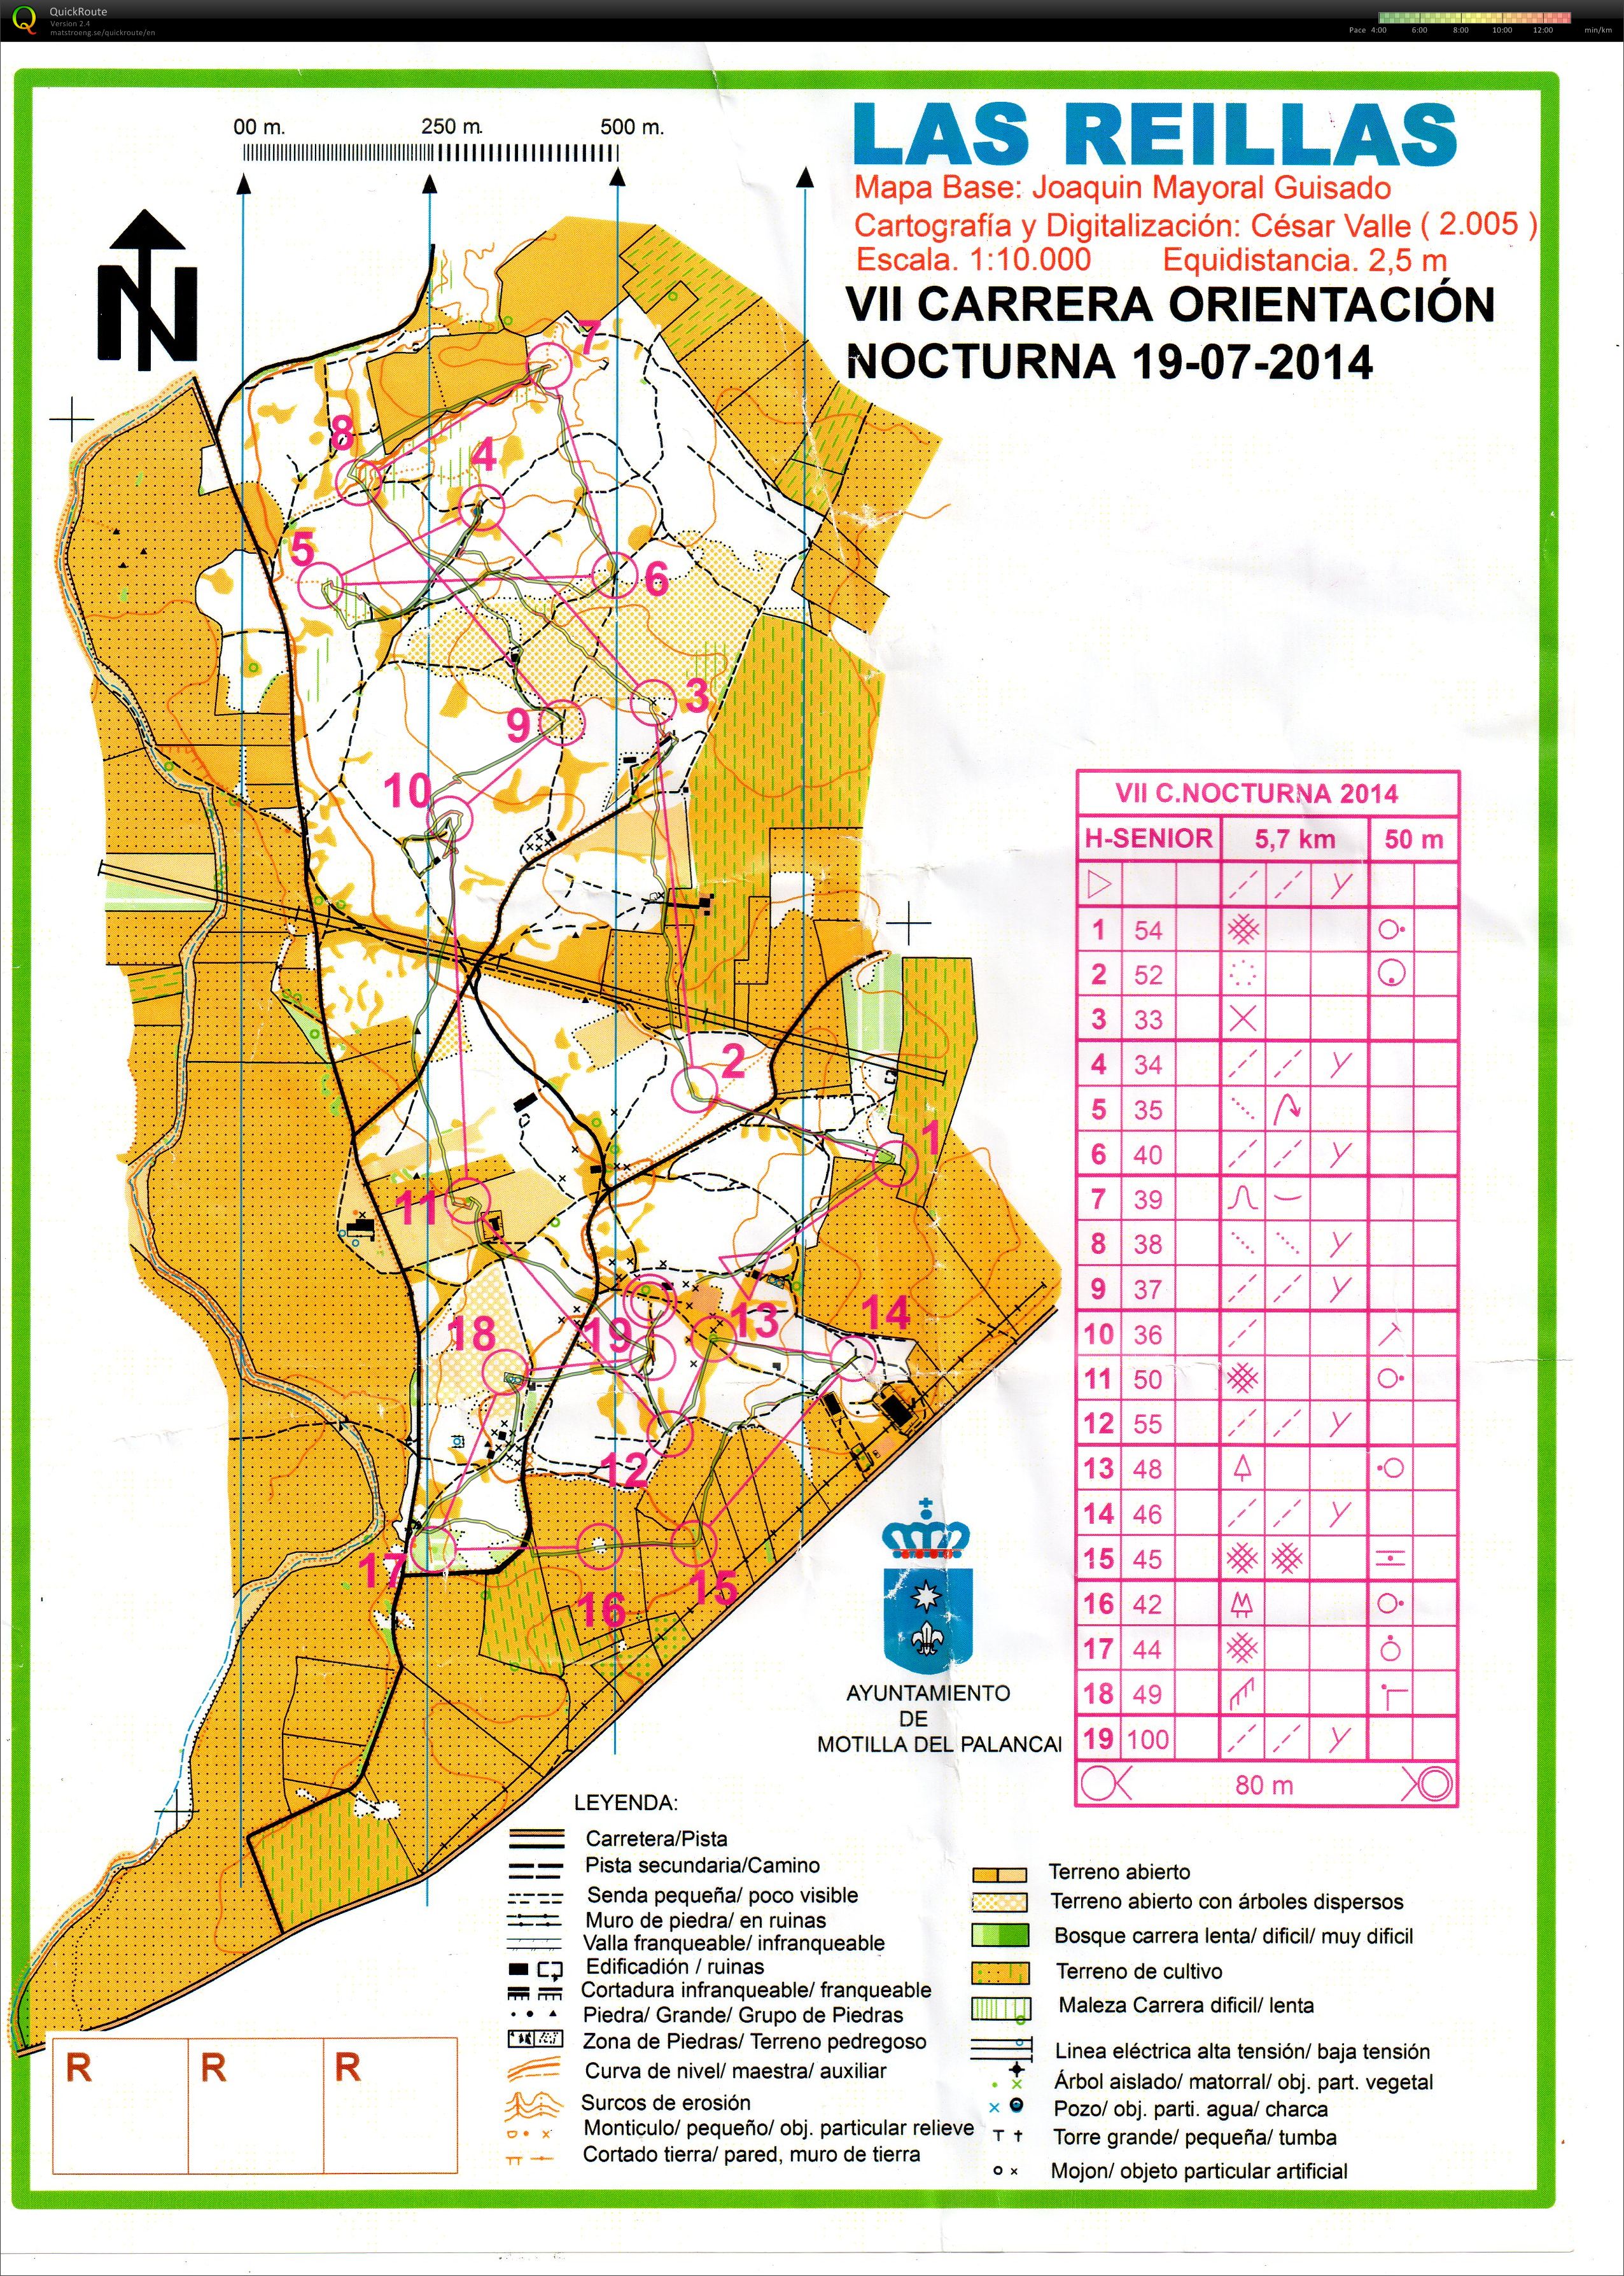 Nocturna Circuito de Orientación de Cuenca (19-07-2014)